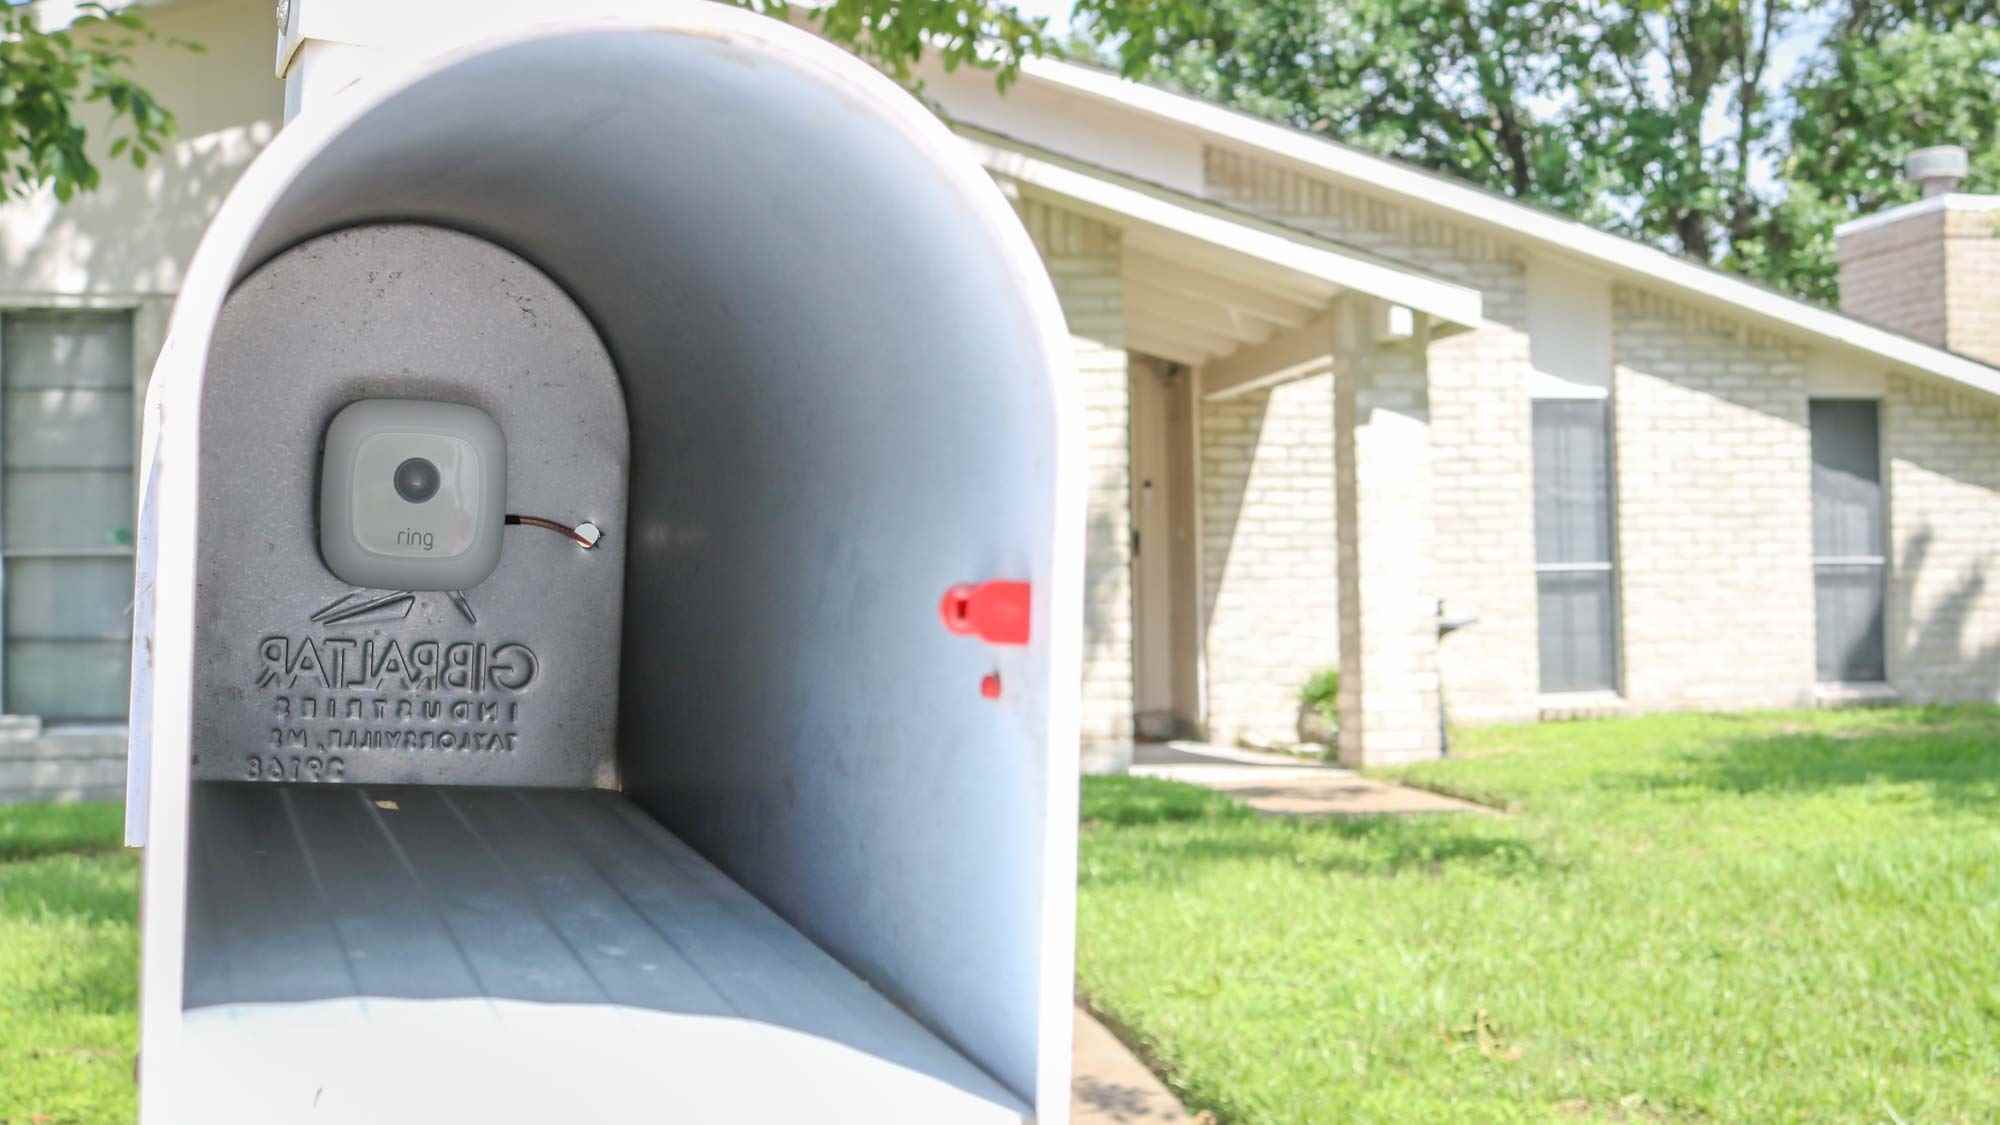 Posta kutusunun arkasına takılı bir Zil Posta Kutusu Sensörü